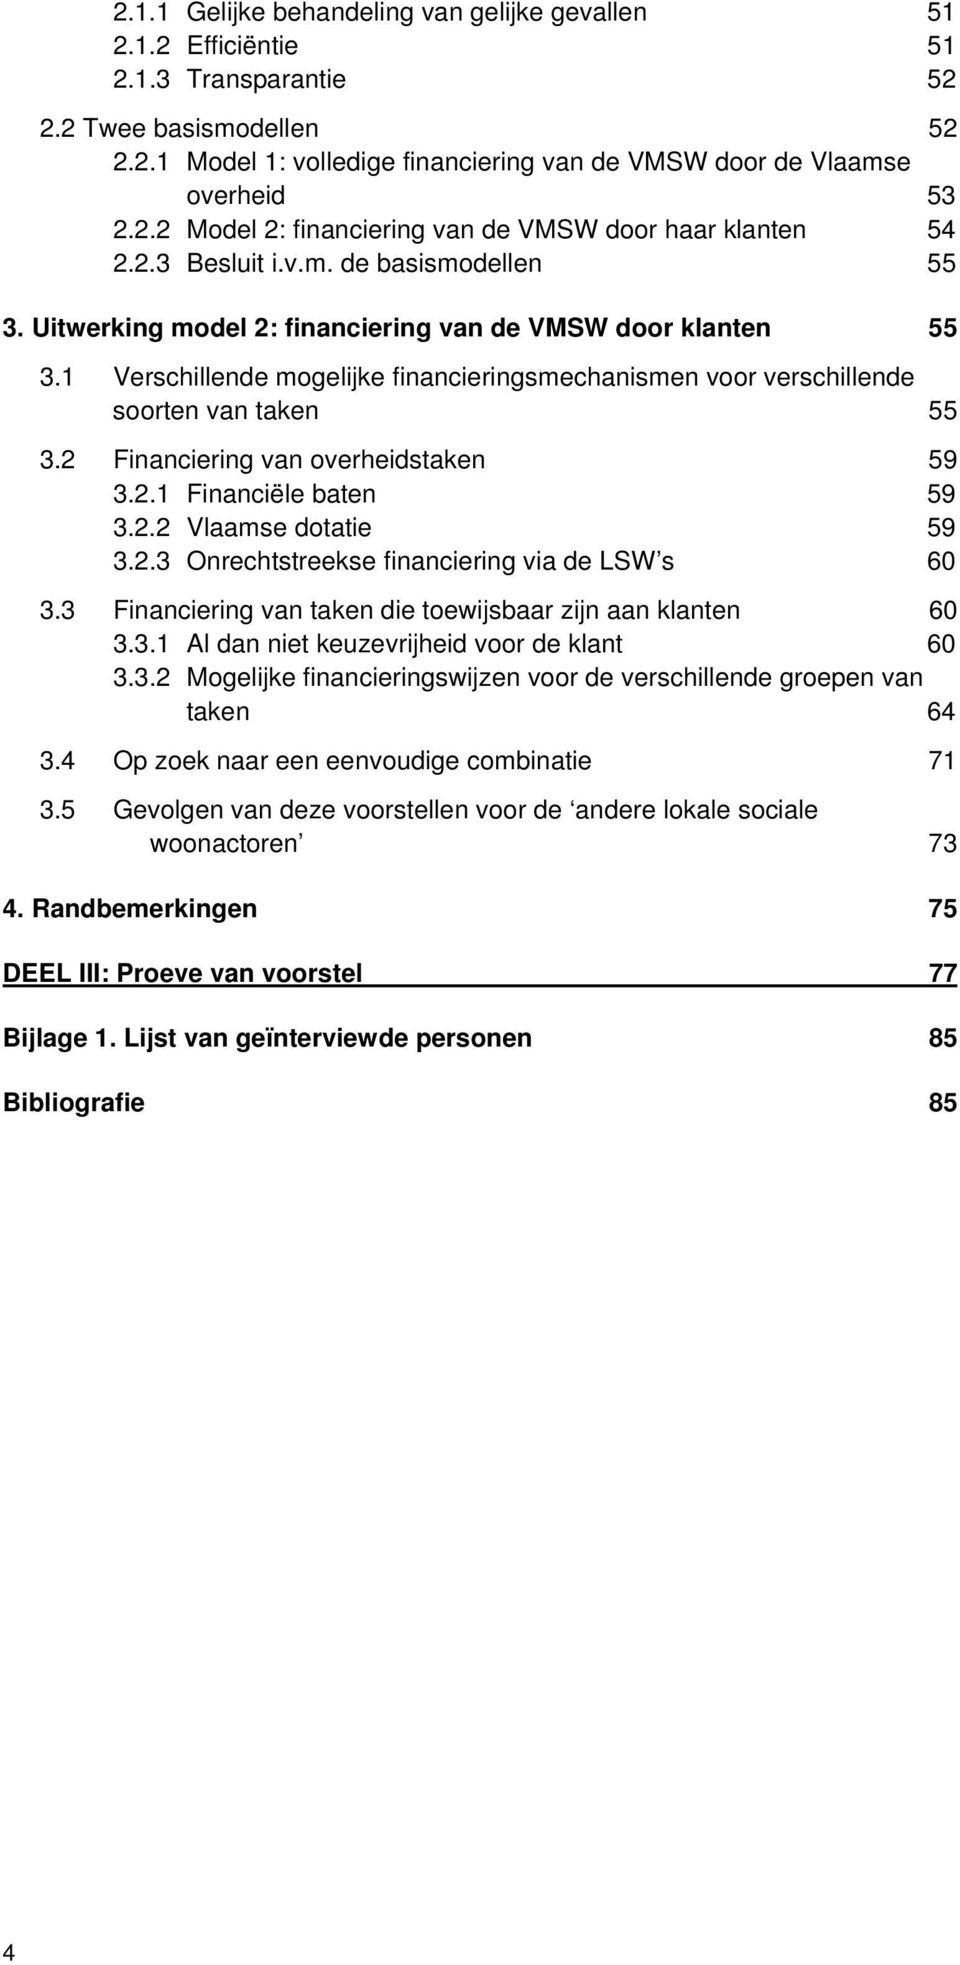 1 Verschillende mogelijke financieringsmechanismen voor verschillende soorten van taken 55 3.2 Financiering van overheidstaken 59 3.2.1 Financiële baten 59 3.2.2 Vlaamse dotatie 59 3.2.3 Onrechtstreekse financiering via de LSW s 60 3.